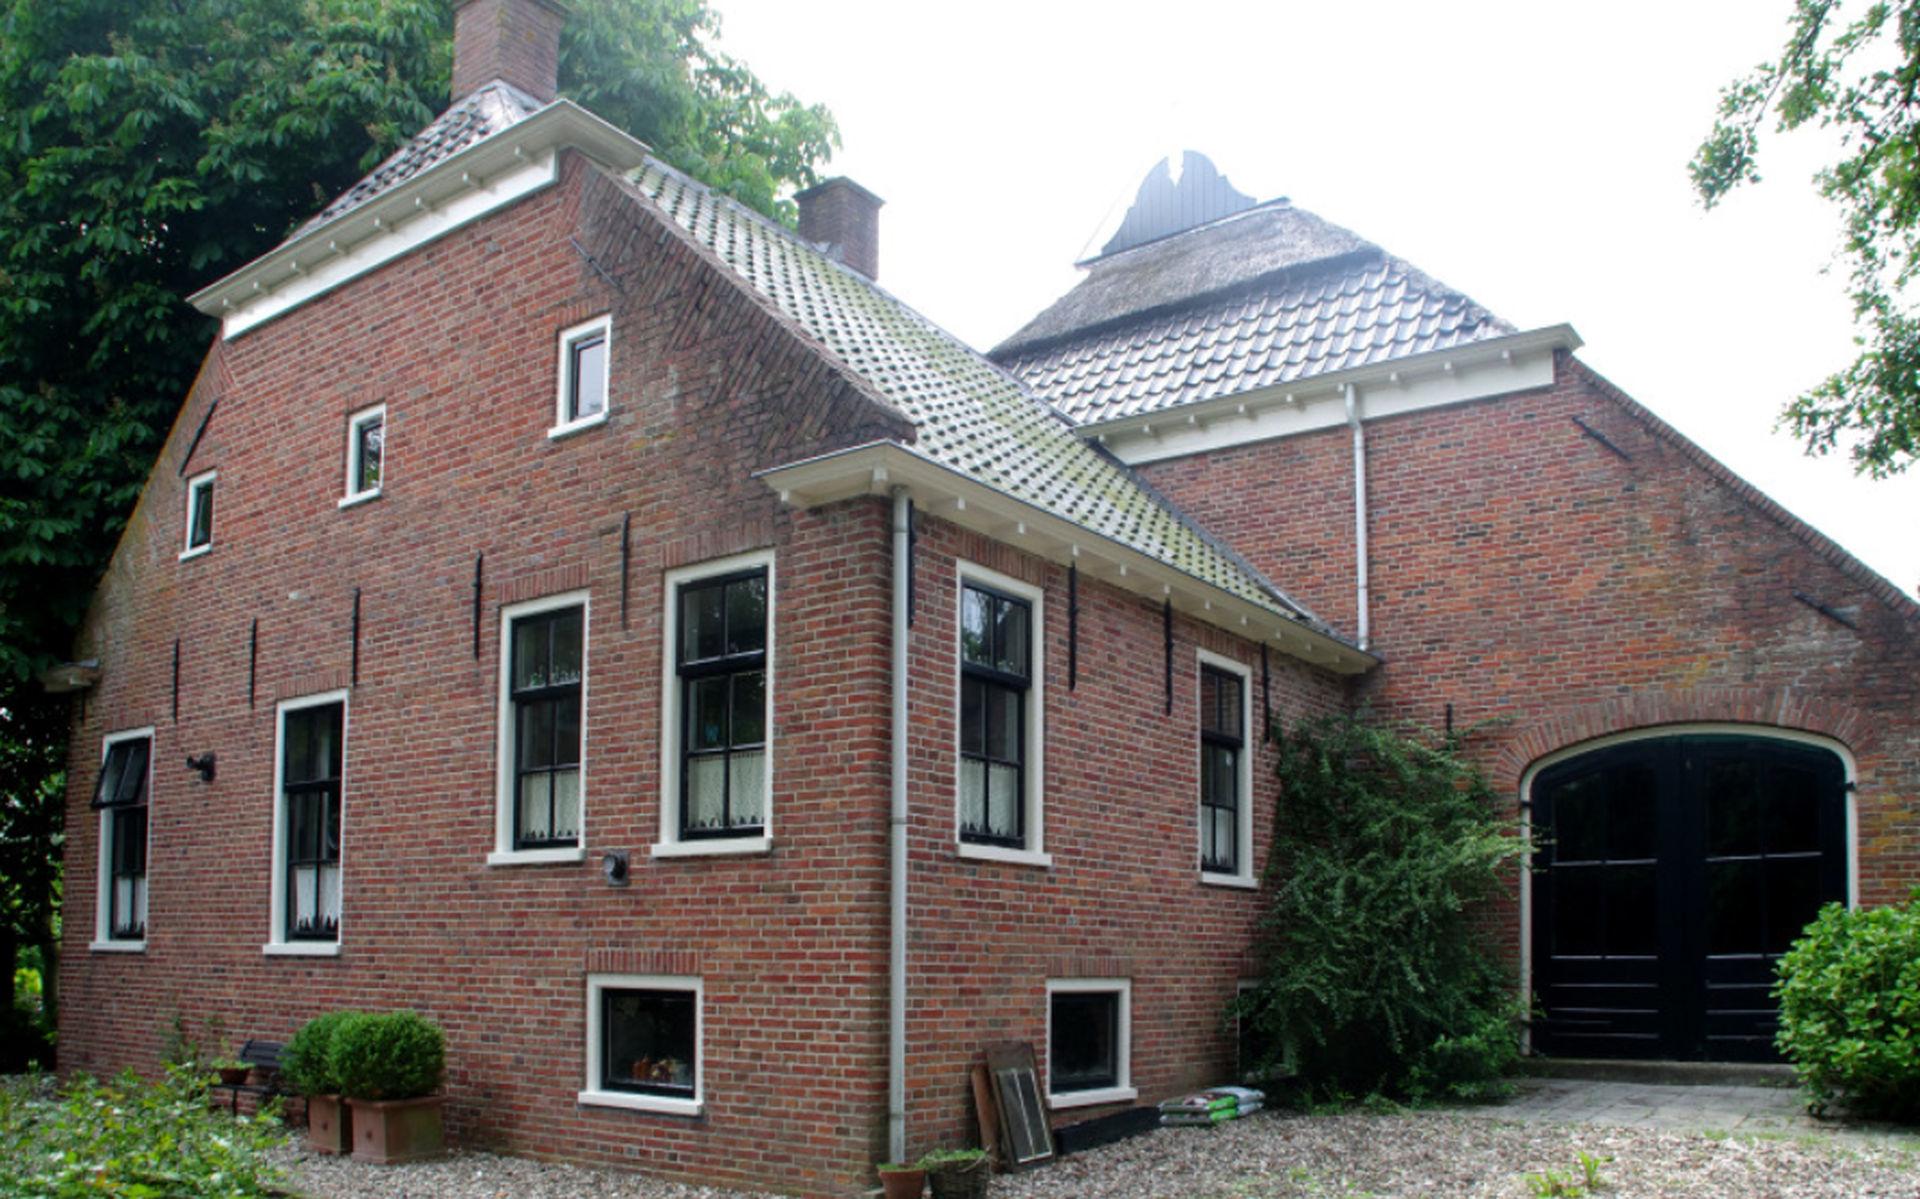 De boerenhoeve zoals getoond in de kunst- en architectuurgids Staat in Eemsdelta.